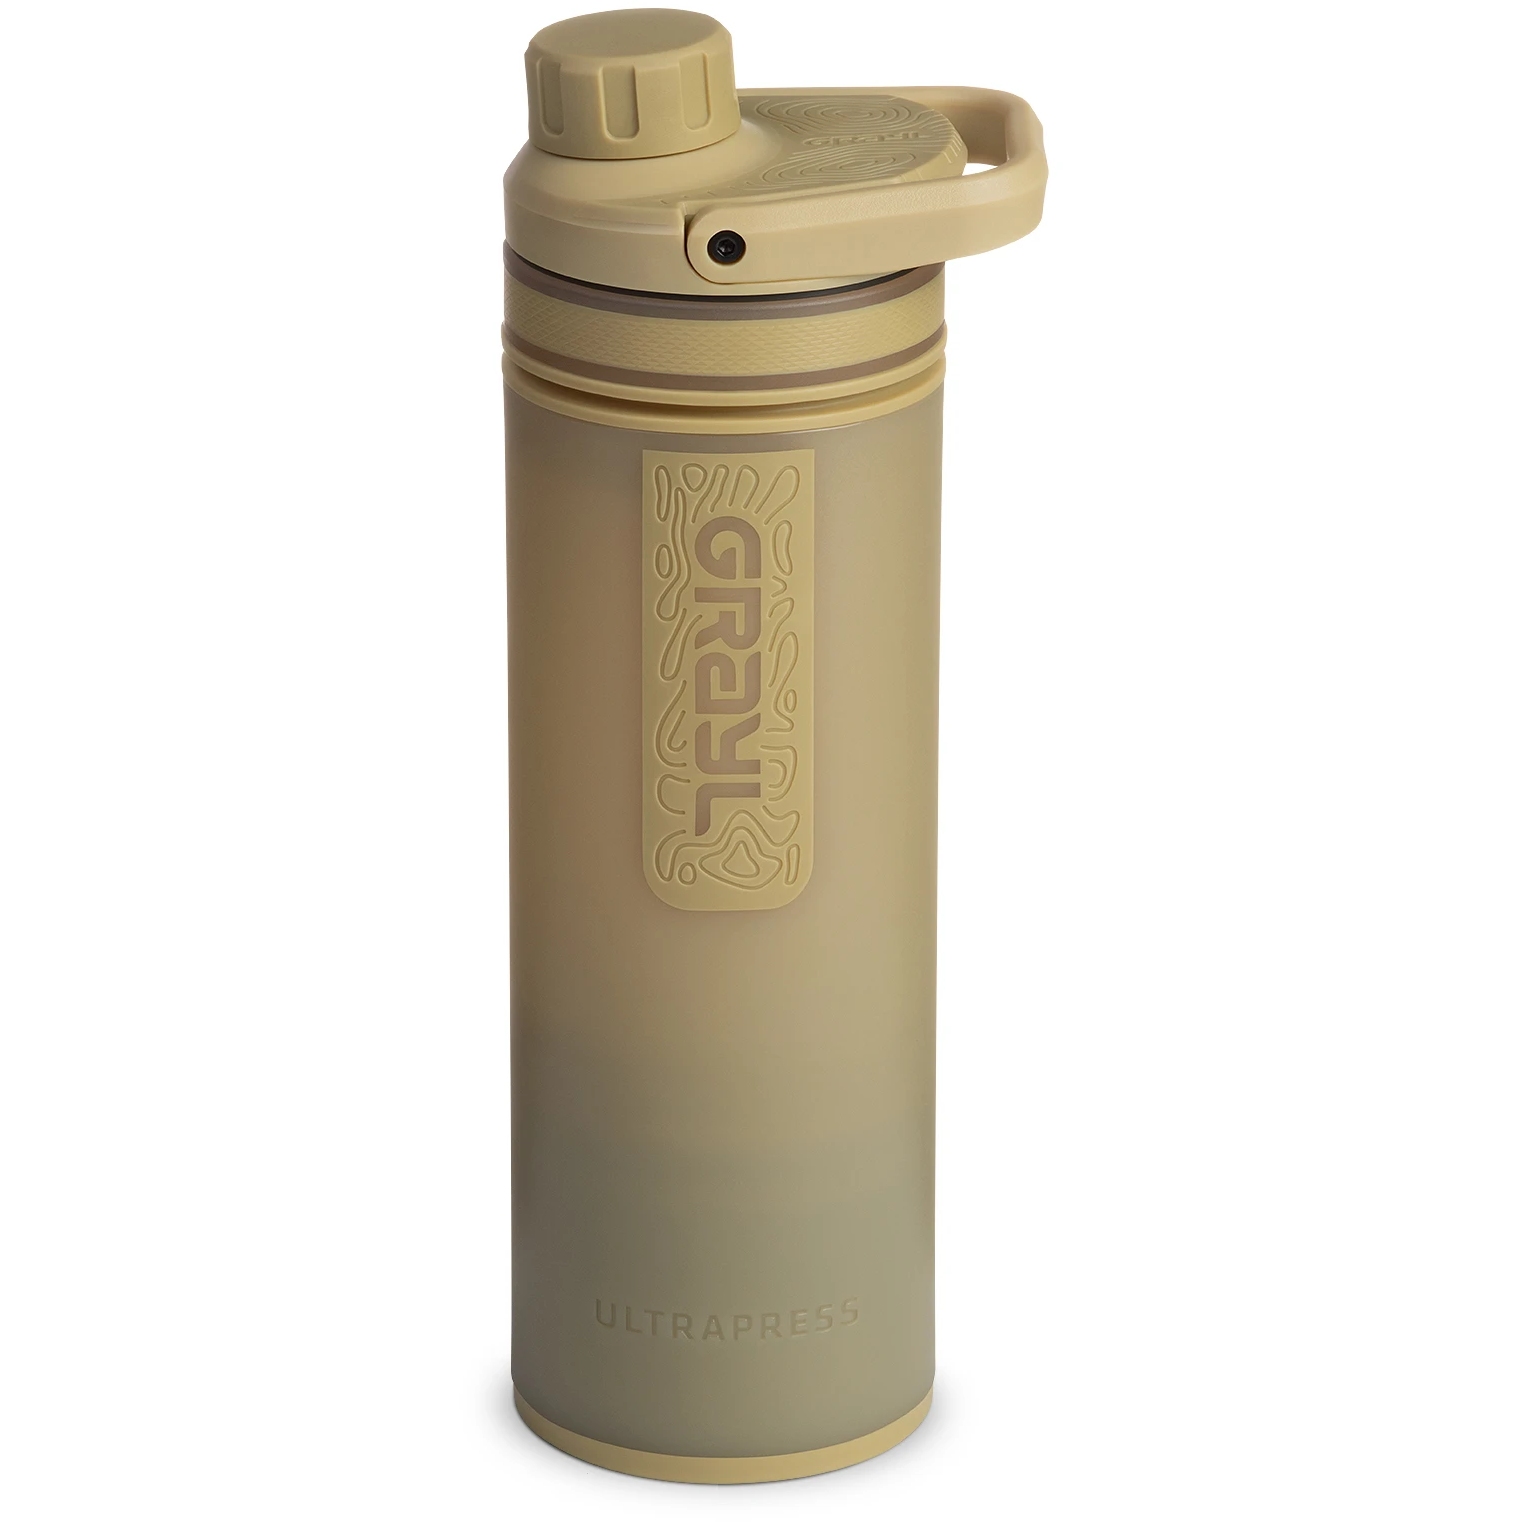 Produktbild von Grayl UltraPress Purifier Trinkflasche mit Wasserfilter - 500ml - Desert Tan